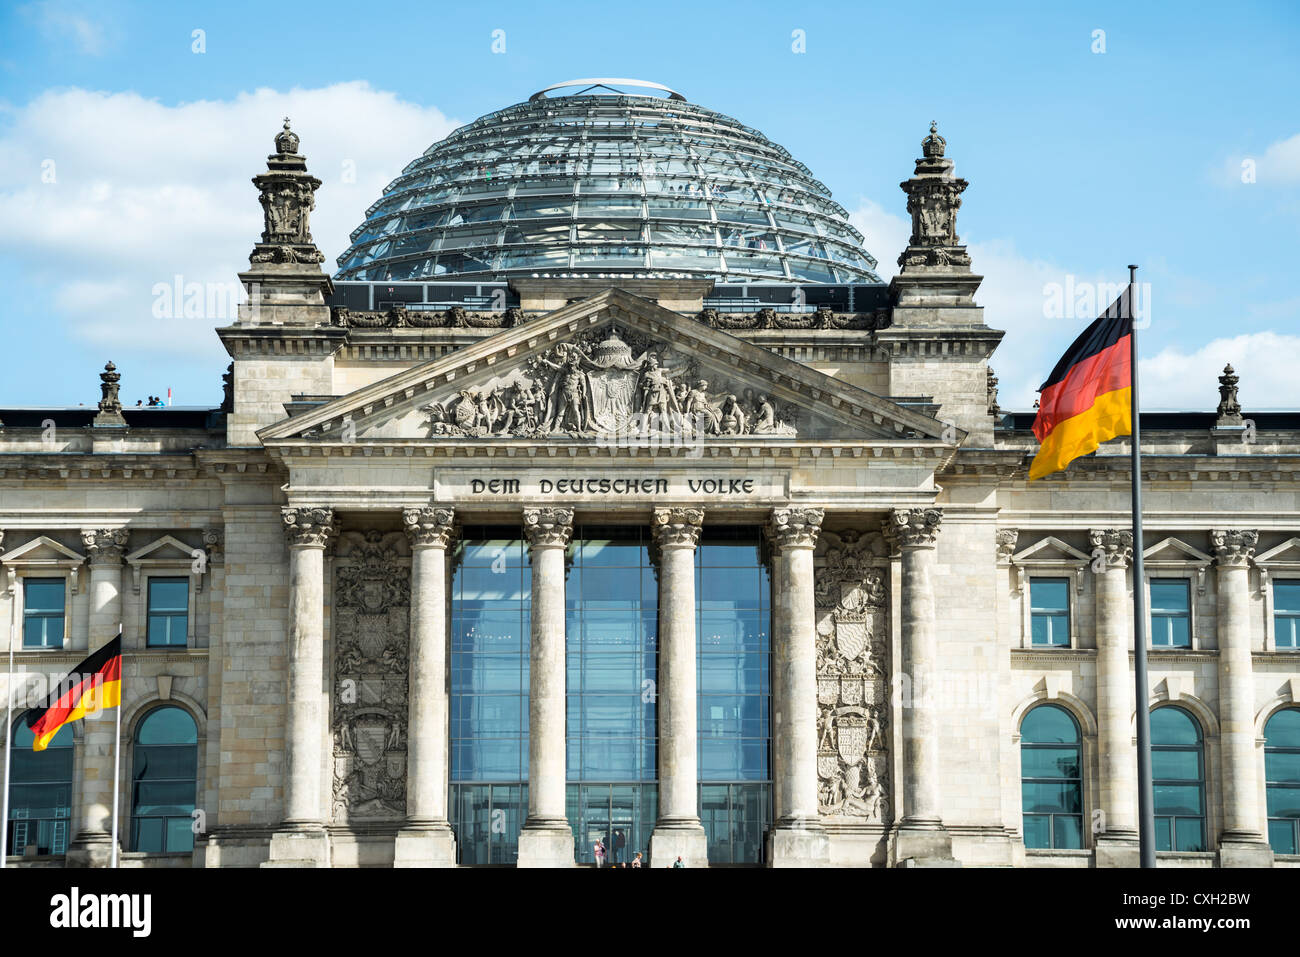 Bâtiment du Reichstag, siège du parlement allemand, Berlin, Germany, Europe Banque D'Images